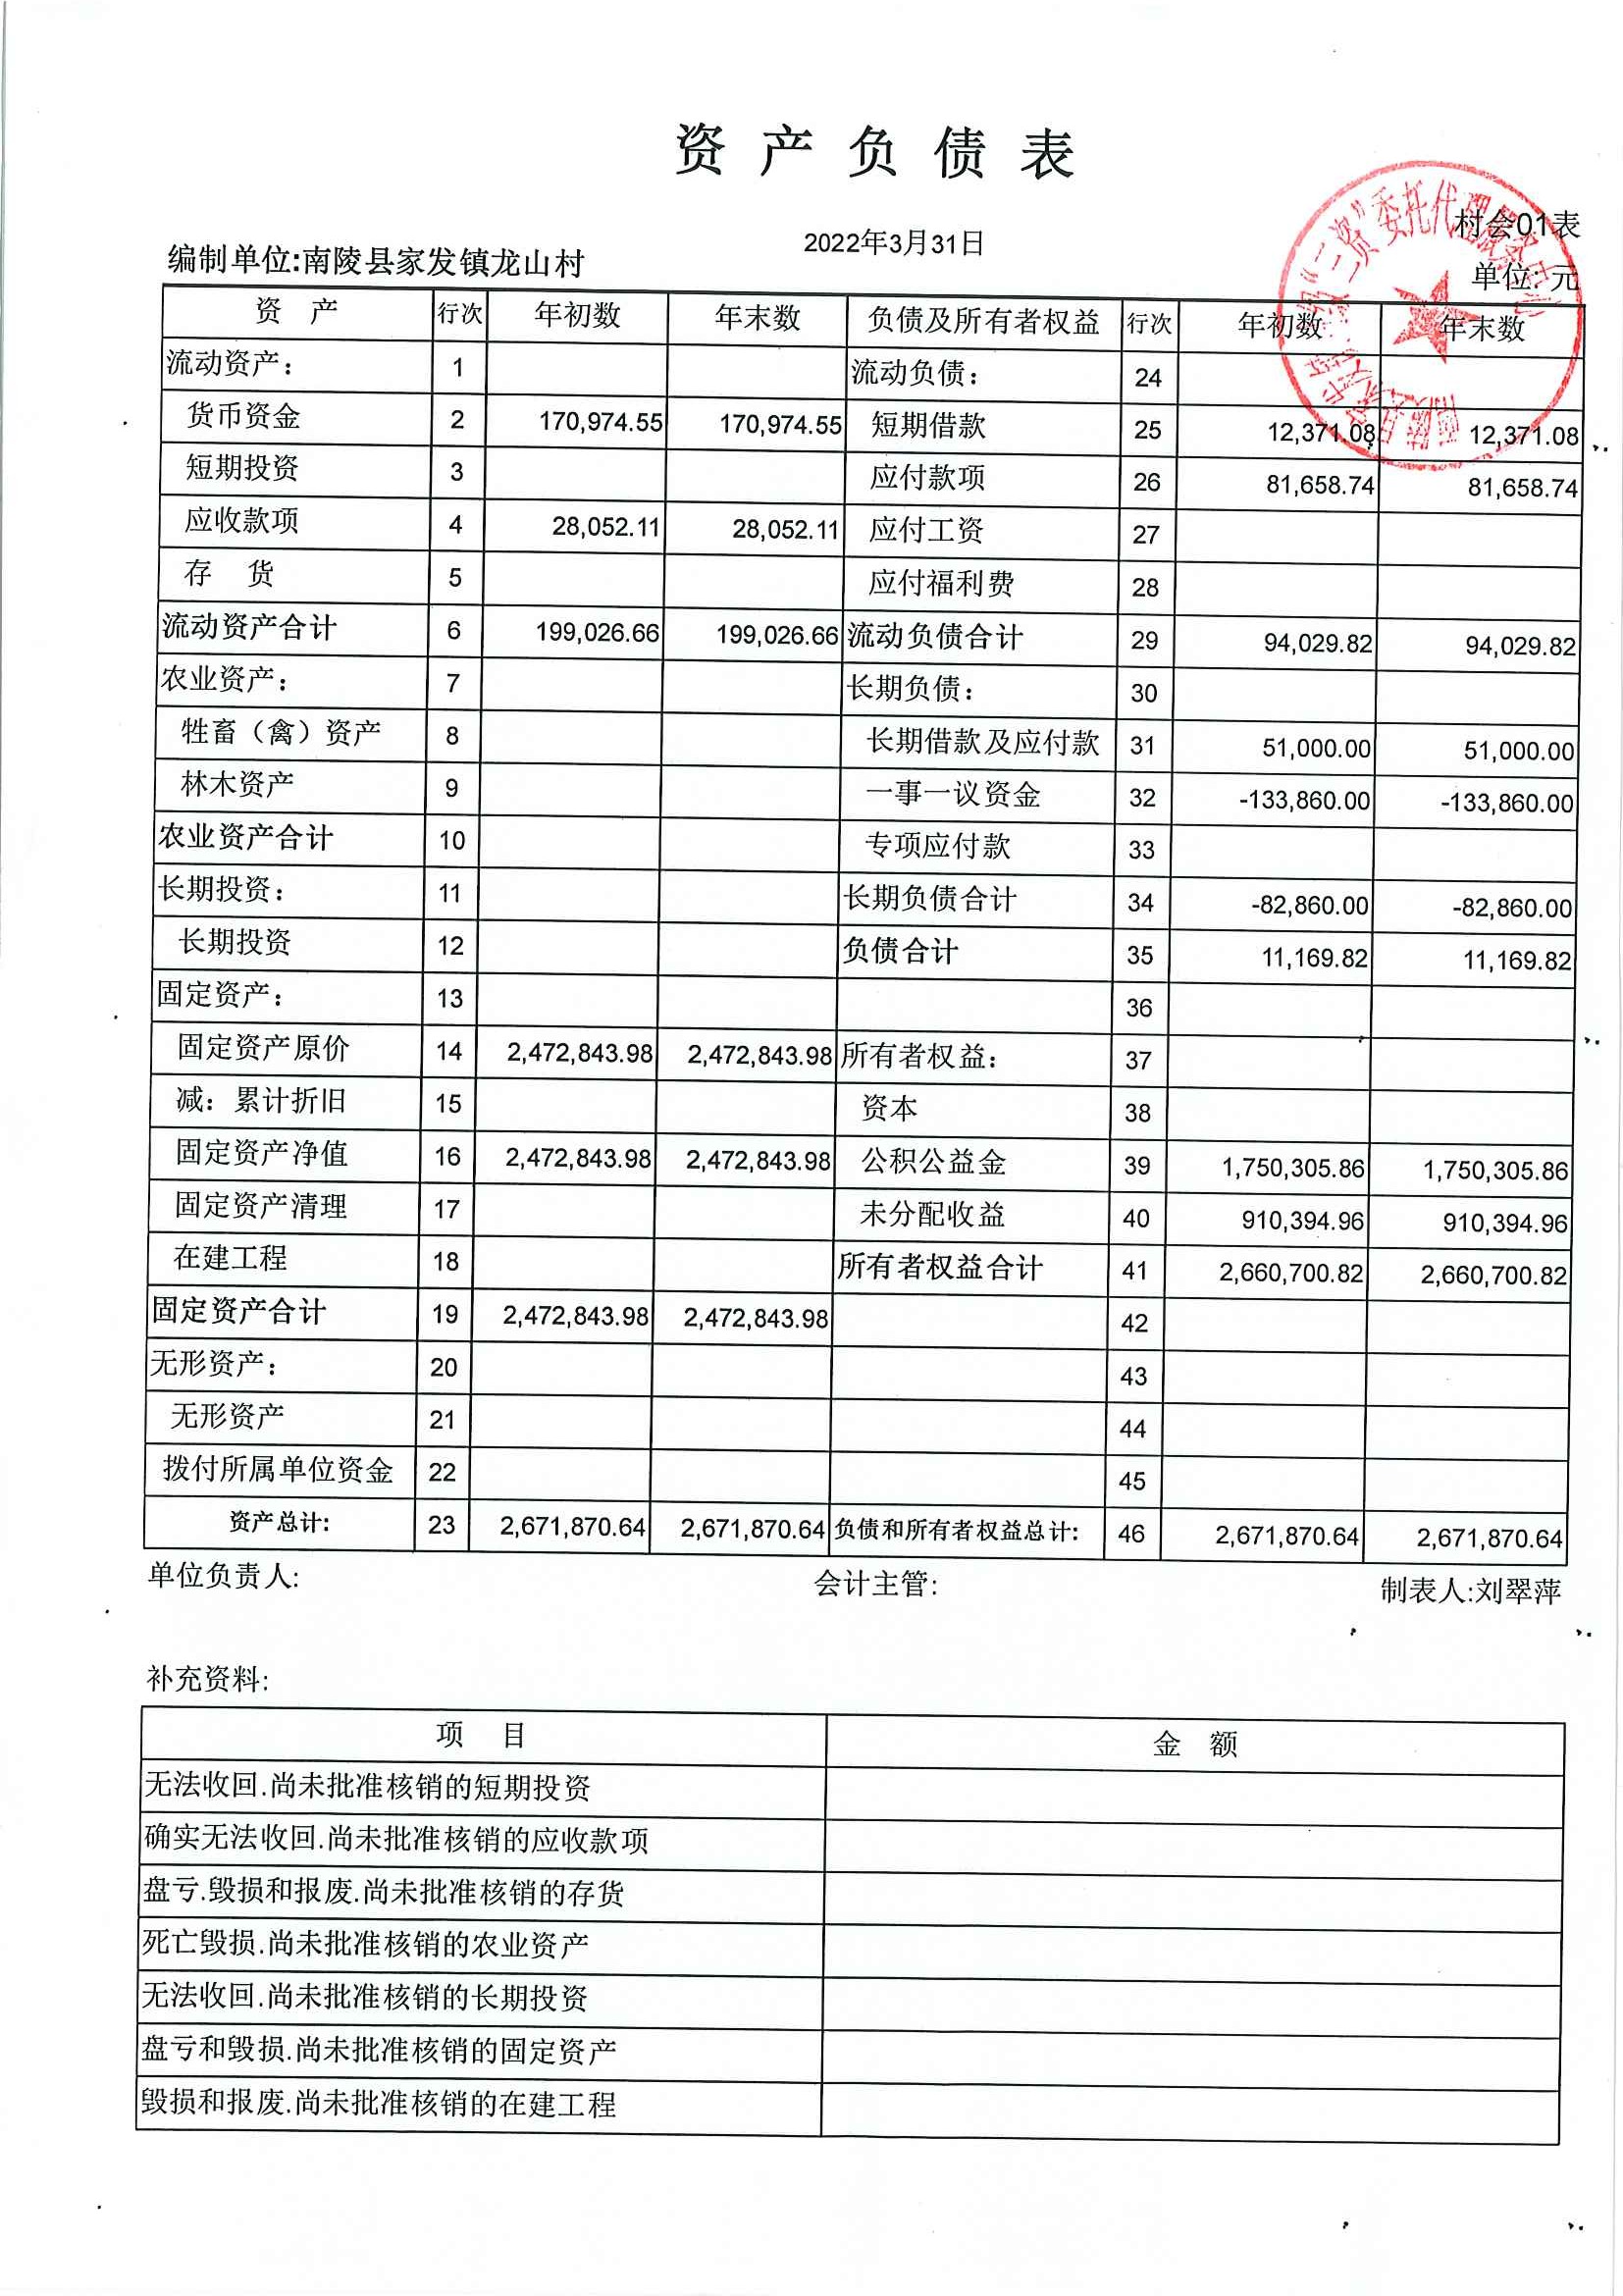 家发镇龙山村2022年第一季度资产负债表_芜湖市政务公开平台